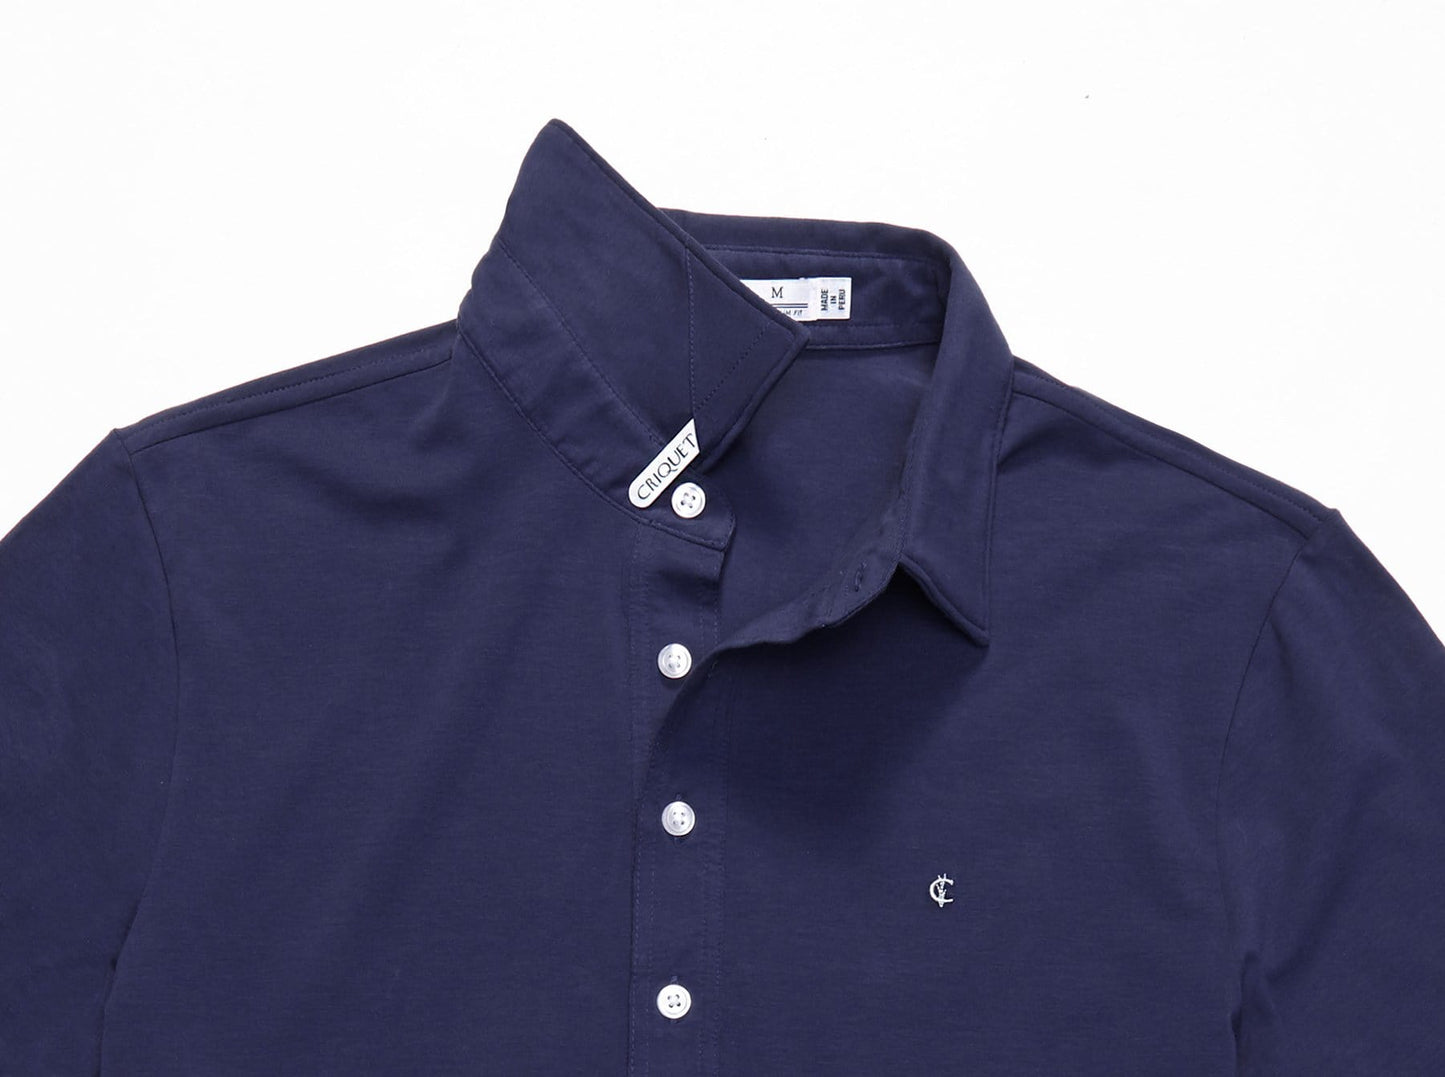 Slim Fit Top-Shelf Range Polo - Navy Blue – Criquet Shirts